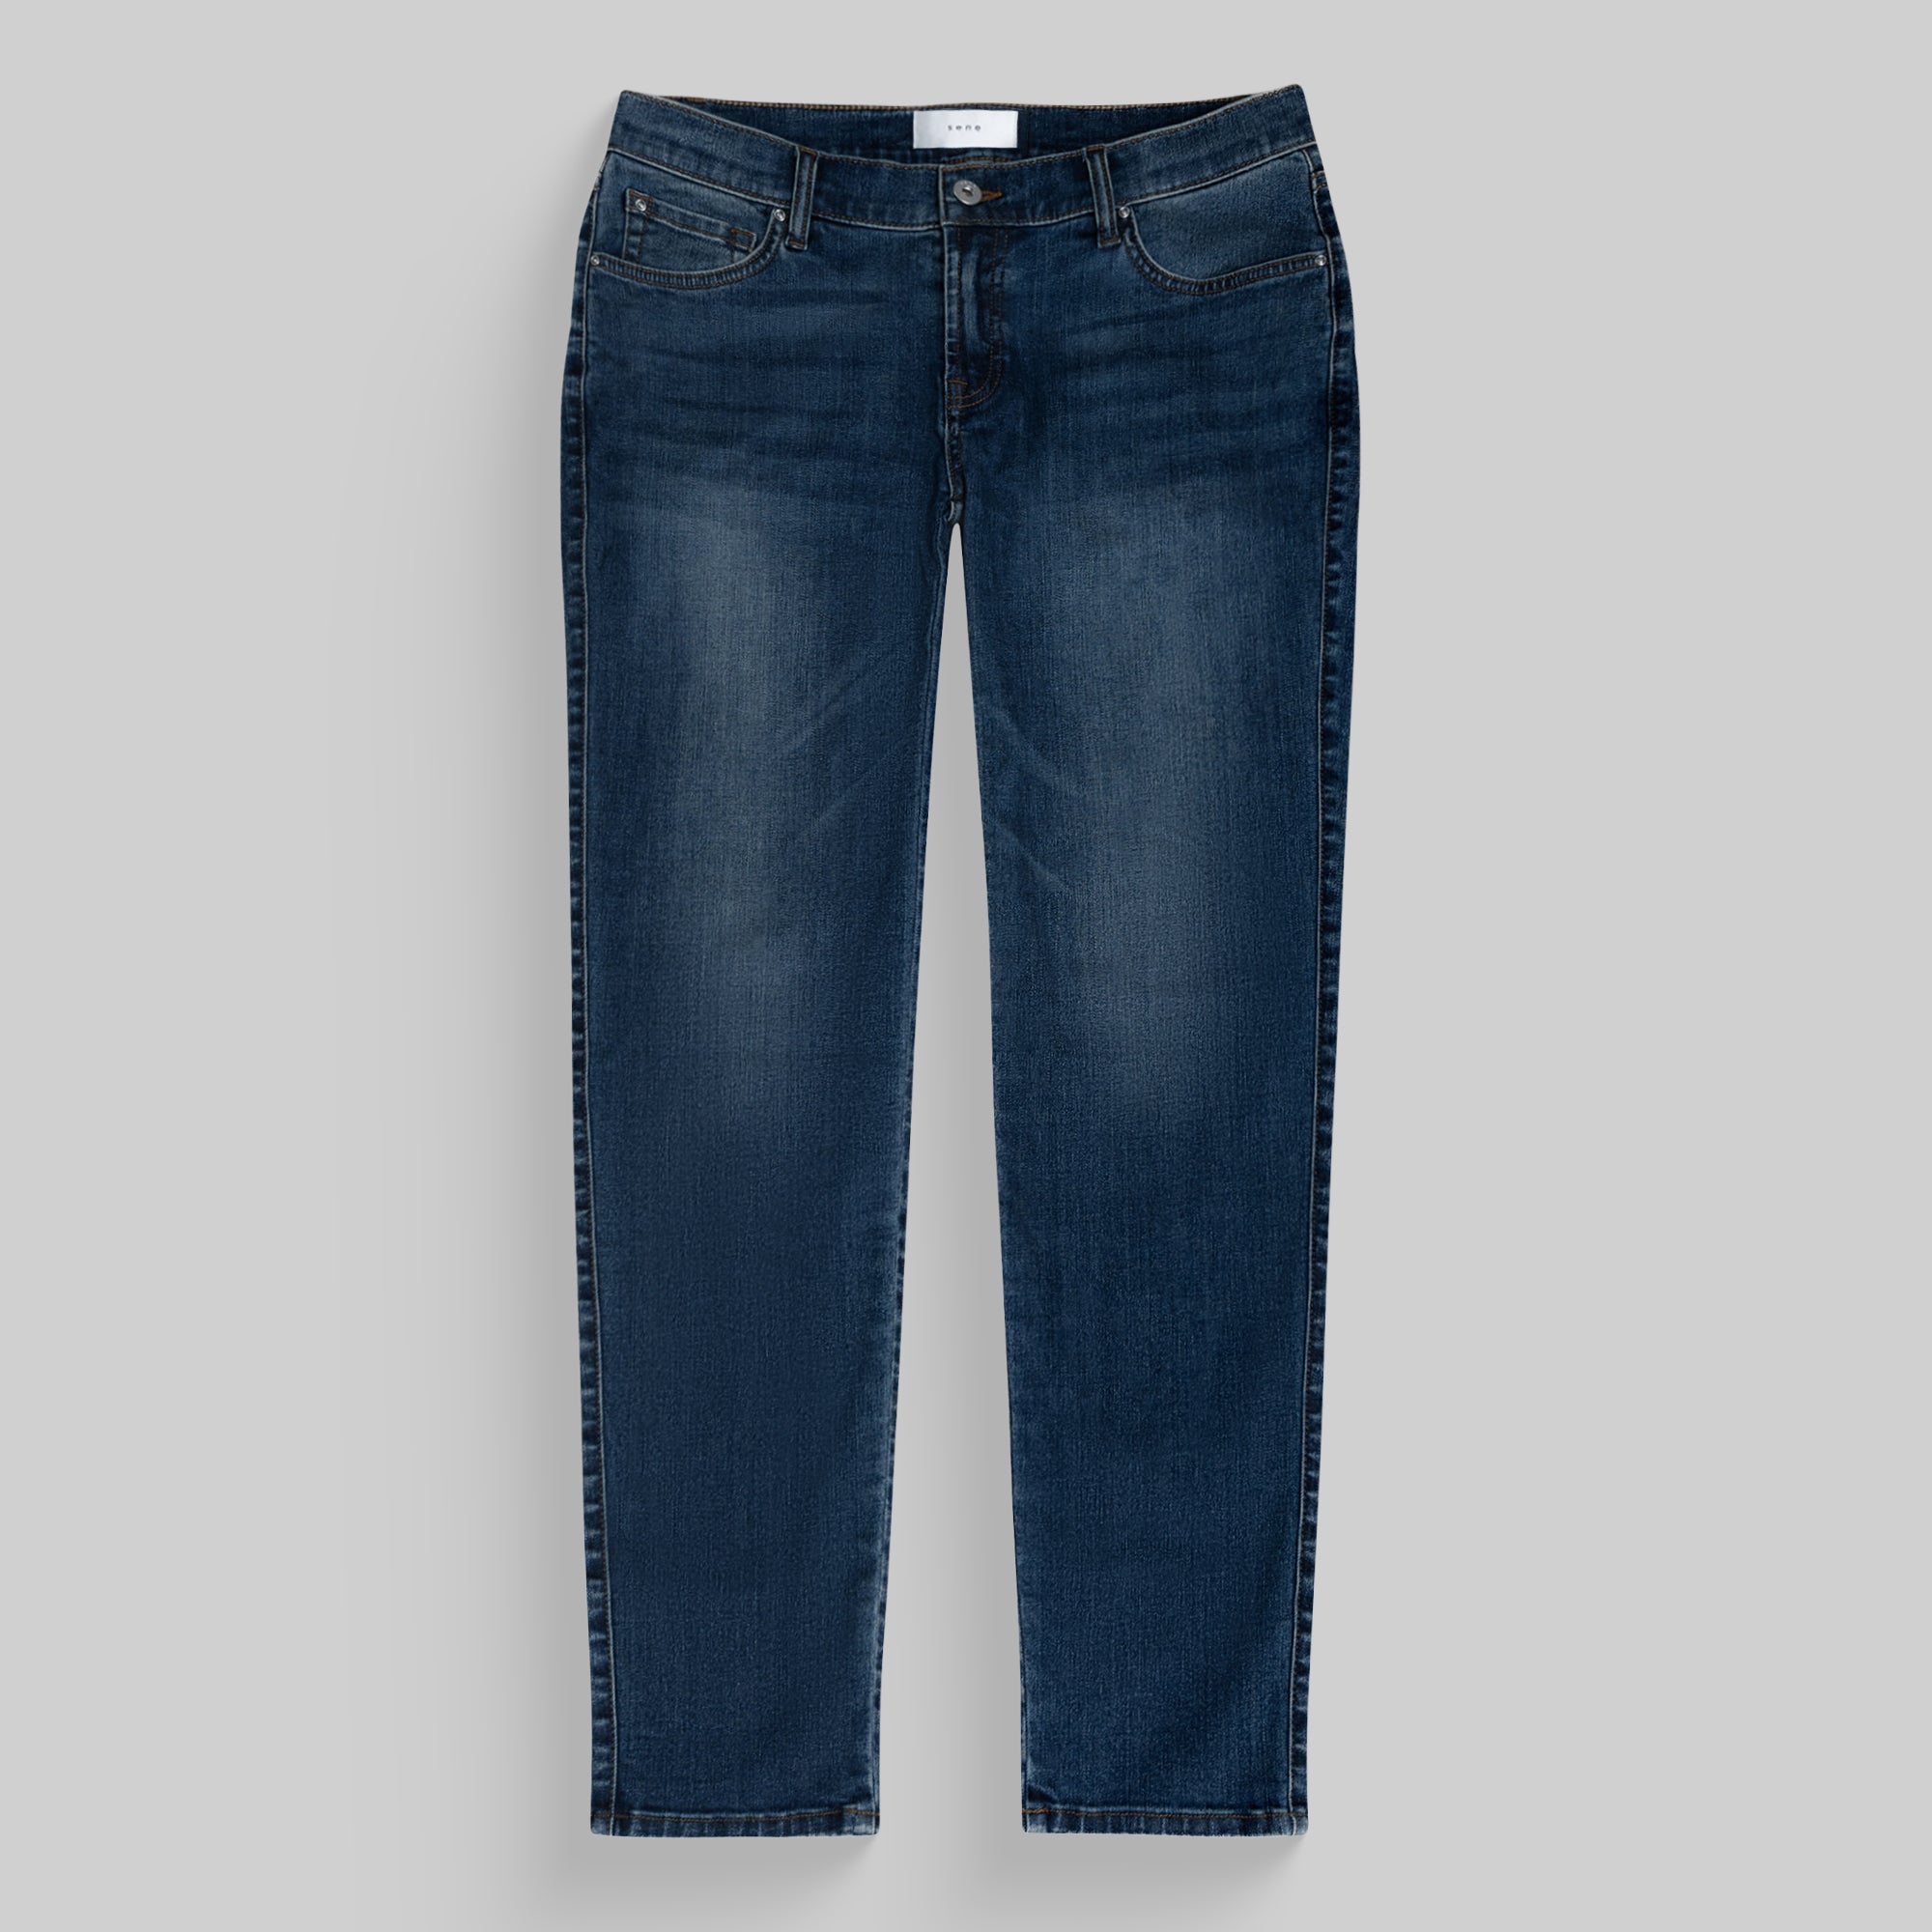 Jeans Men\'s Custom